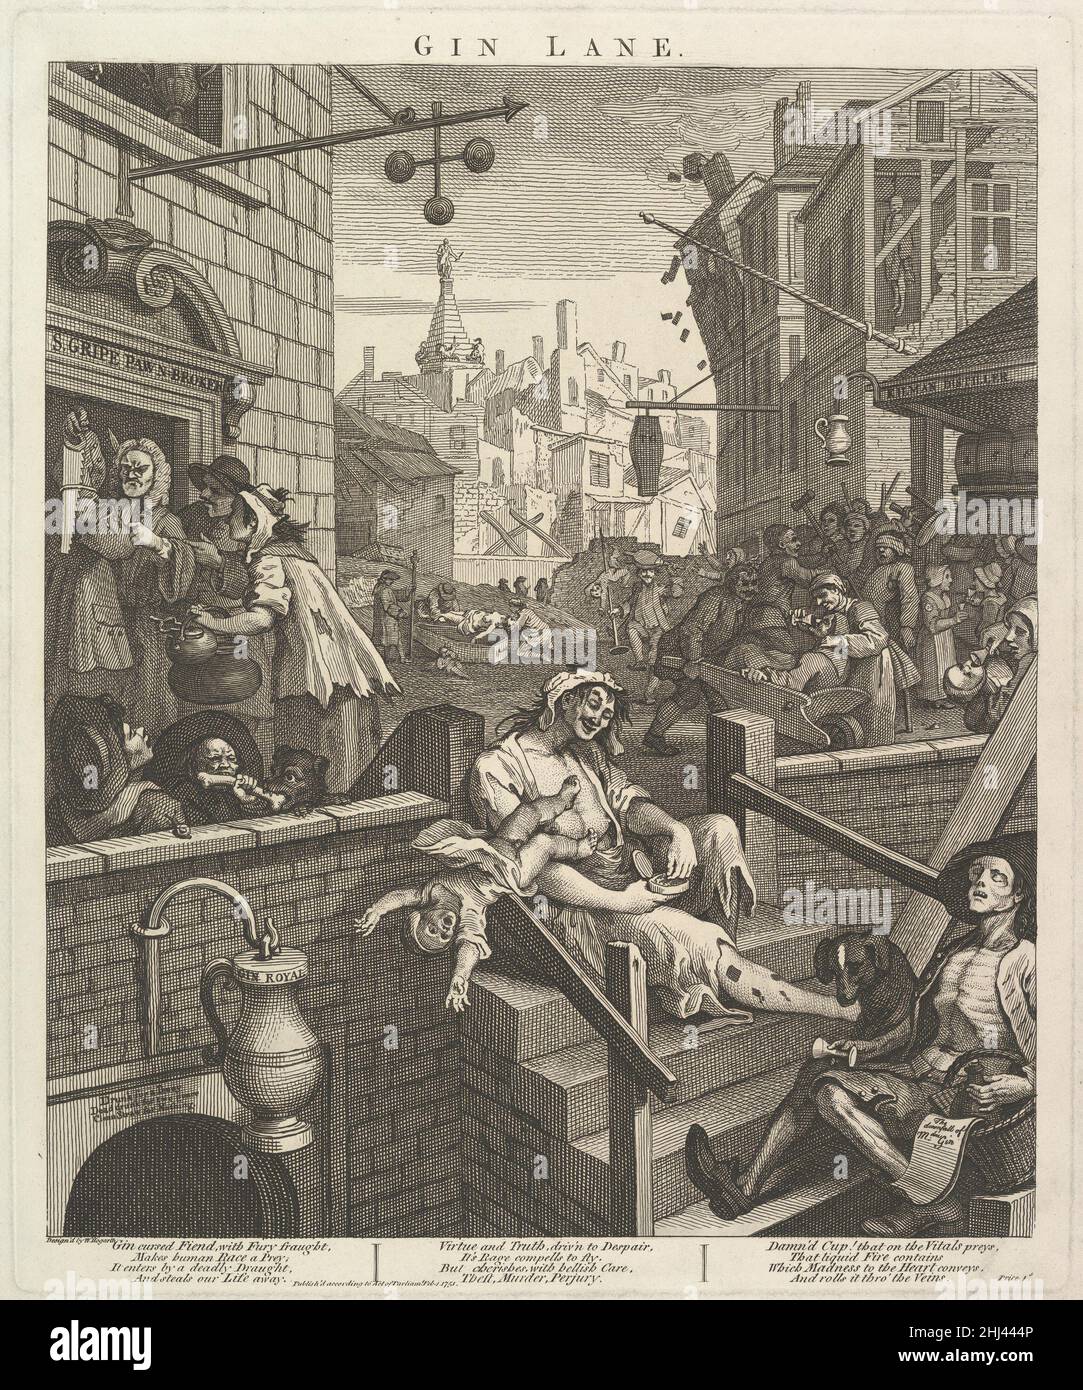 Gin Lane 1 février 1751 William Hogarth British.Gin Lane 399943 Banque D'Images